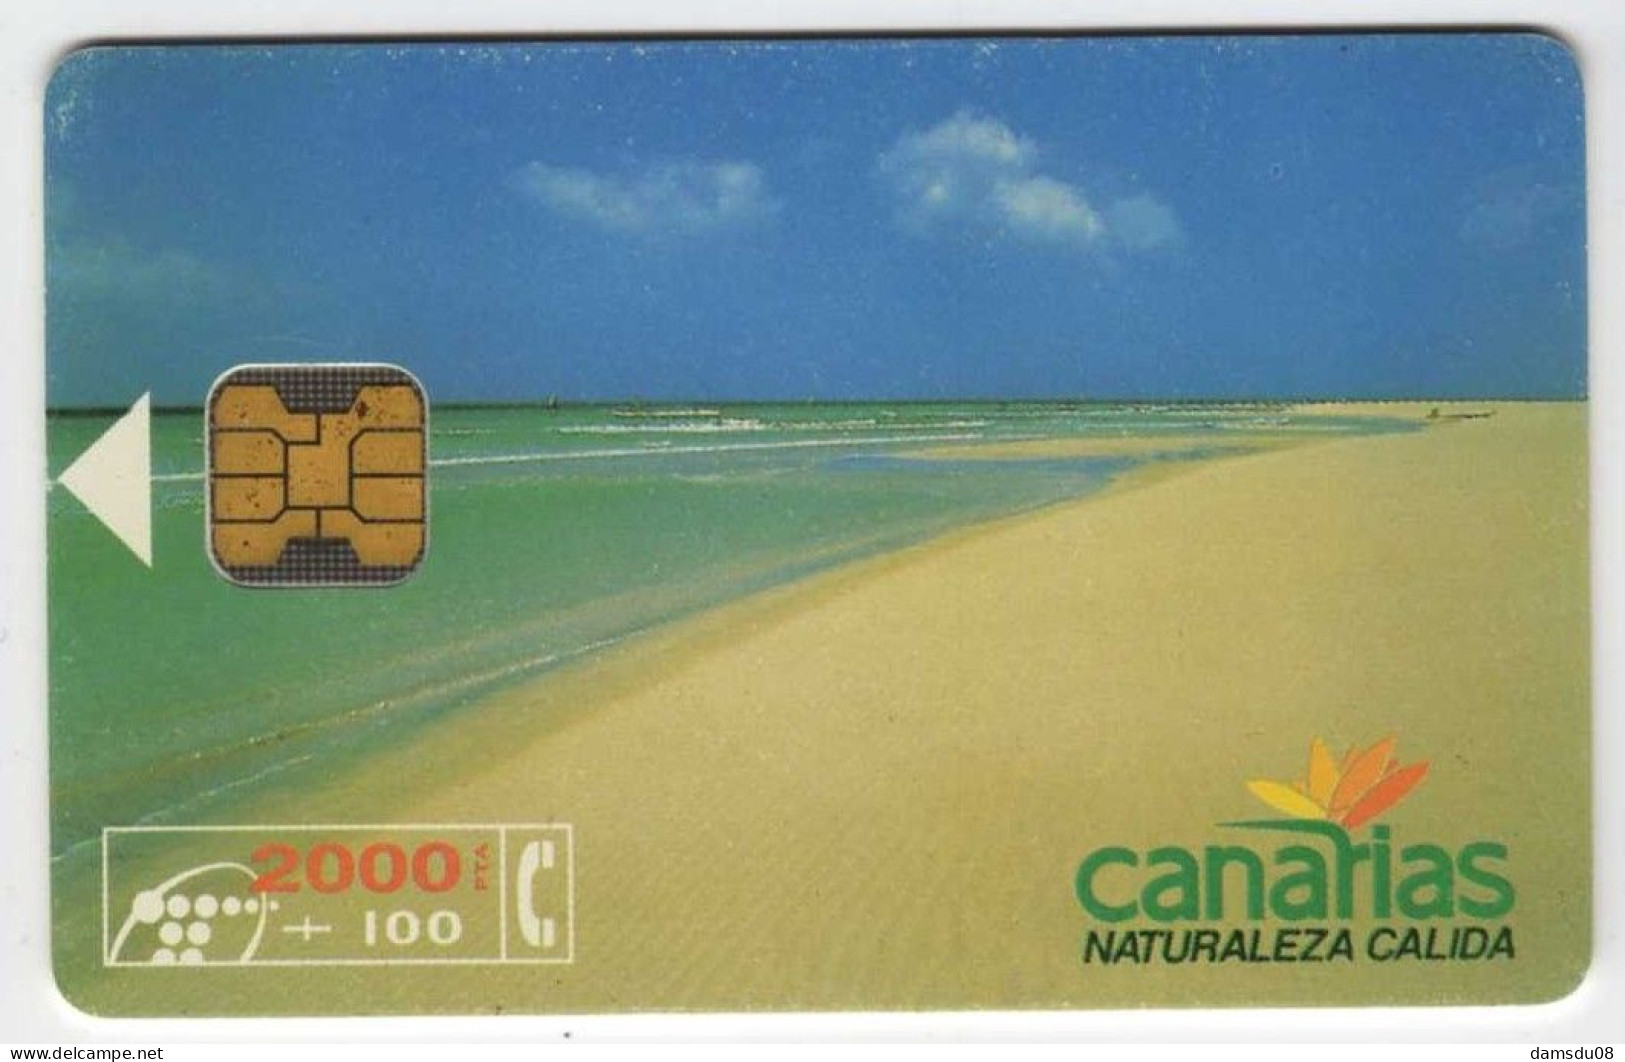 Espagne Canarias 2000 PTA 08/94 150000 Exemplaires Vide - Basisuitgaven